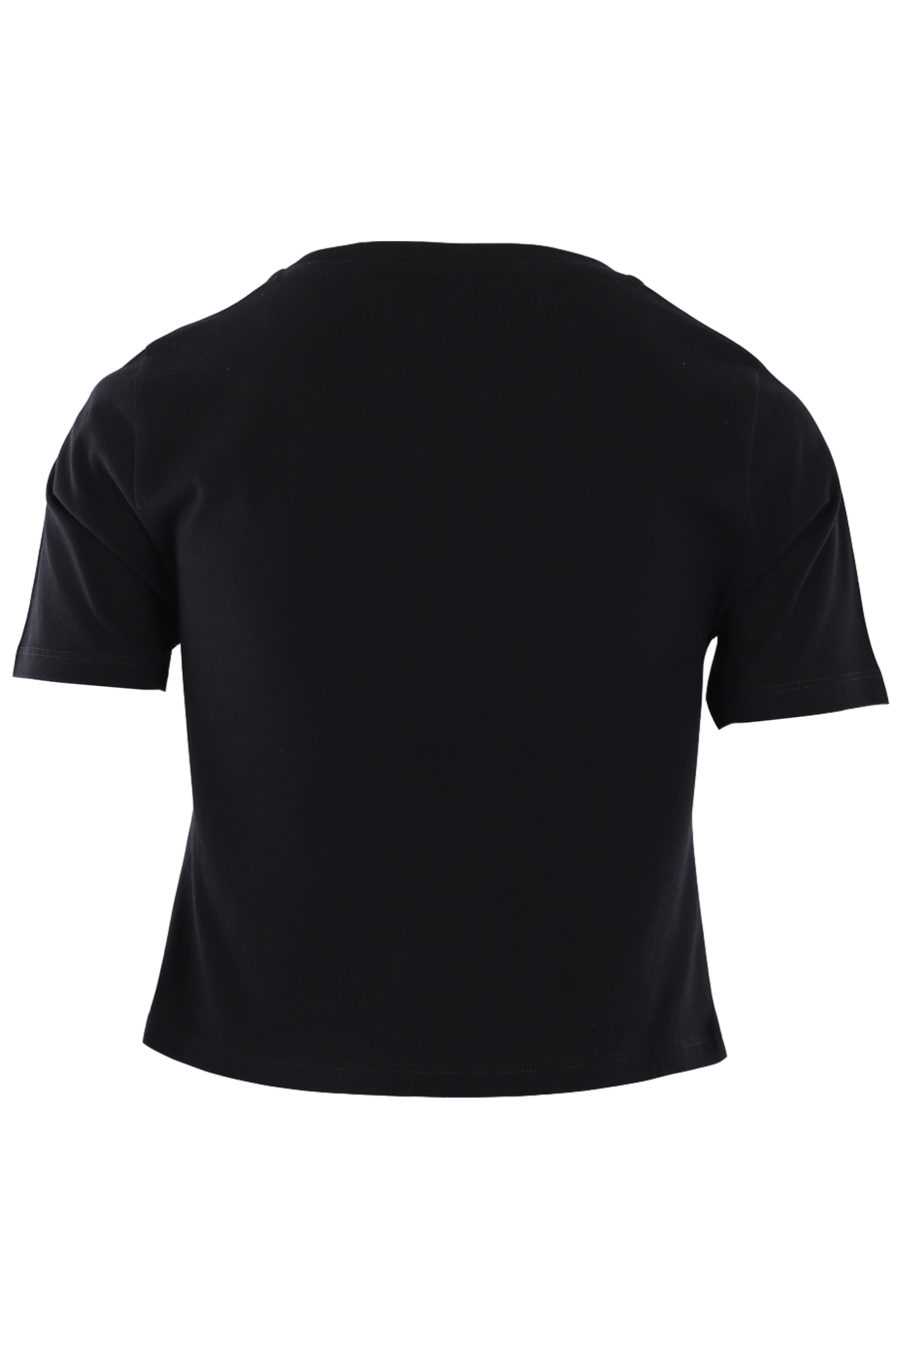 Schwarzes kurzes T-Shirt mit tropischem Logo - IMG 0755